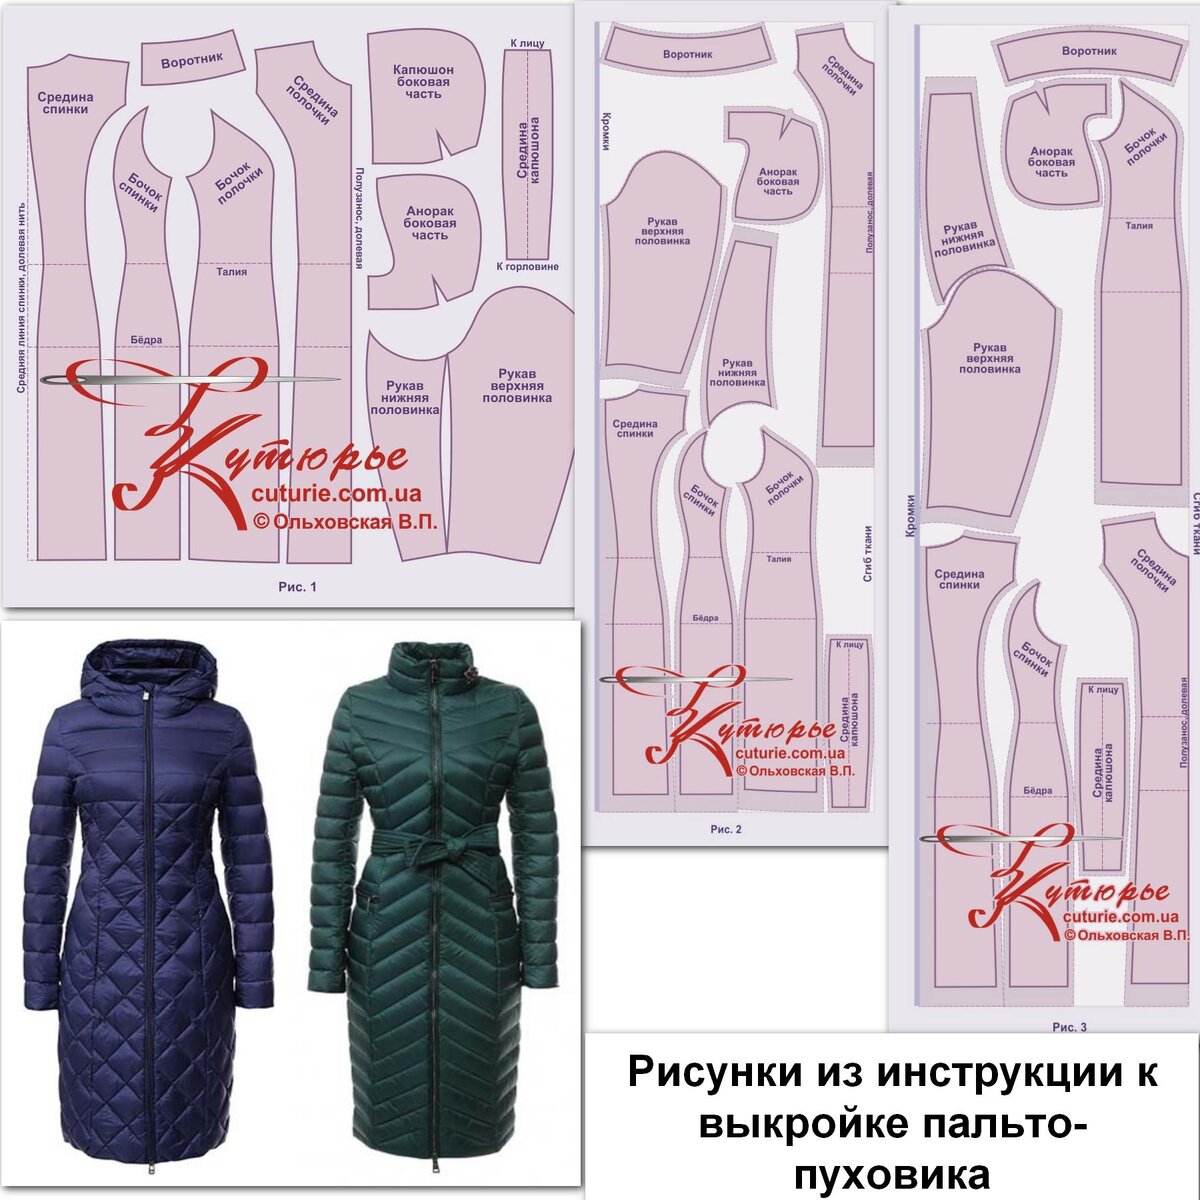 Выкройка женского стеганого пальто WC160321